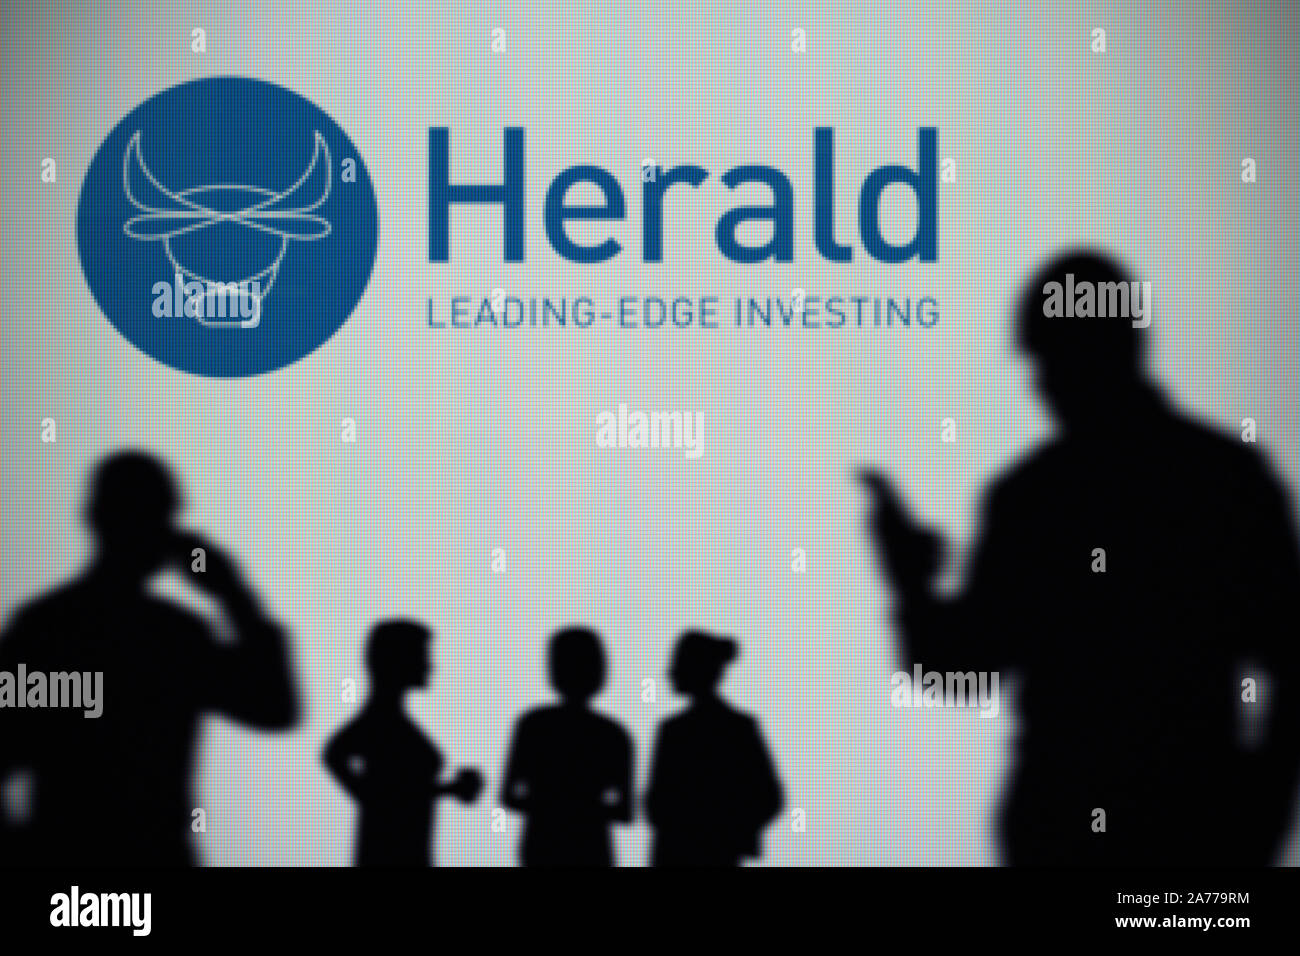 El Herald Investment Trust logo es visto en una pantalla LED en el fondo mientras una silueta persona utiliza un smartphone (uso Editorial solamente) Foto de stock